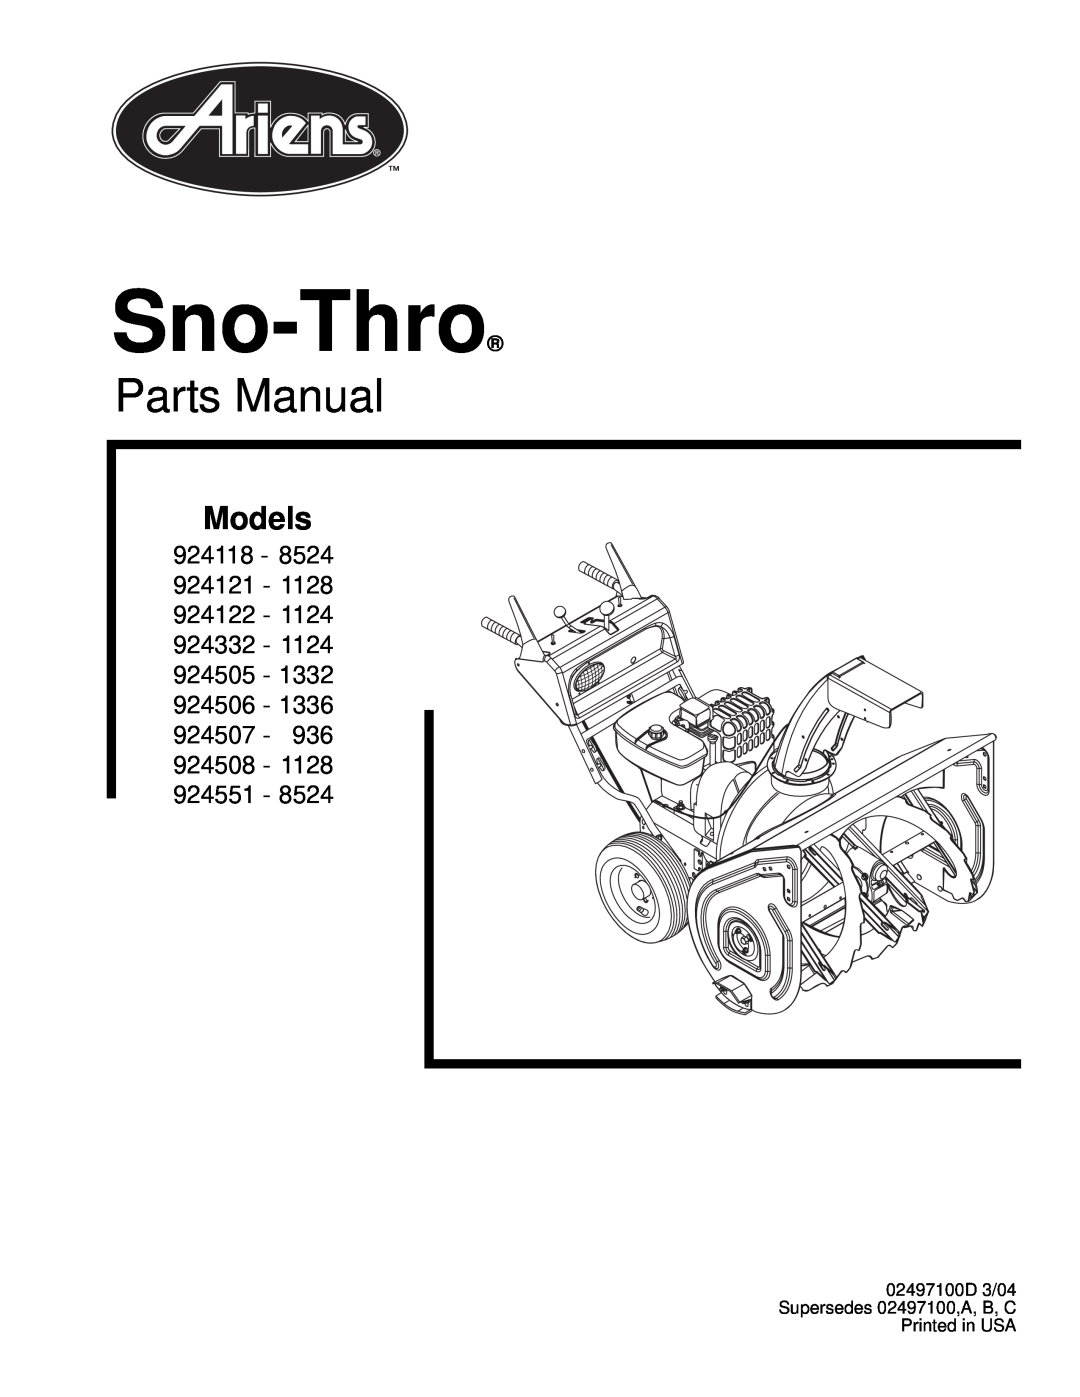 Ariens 924116 - 1028 manual Sno-Thro, Parts Manual, Models, 924116 - 924117 - 924300 - 924505 - 924506, 924507 - 924508 